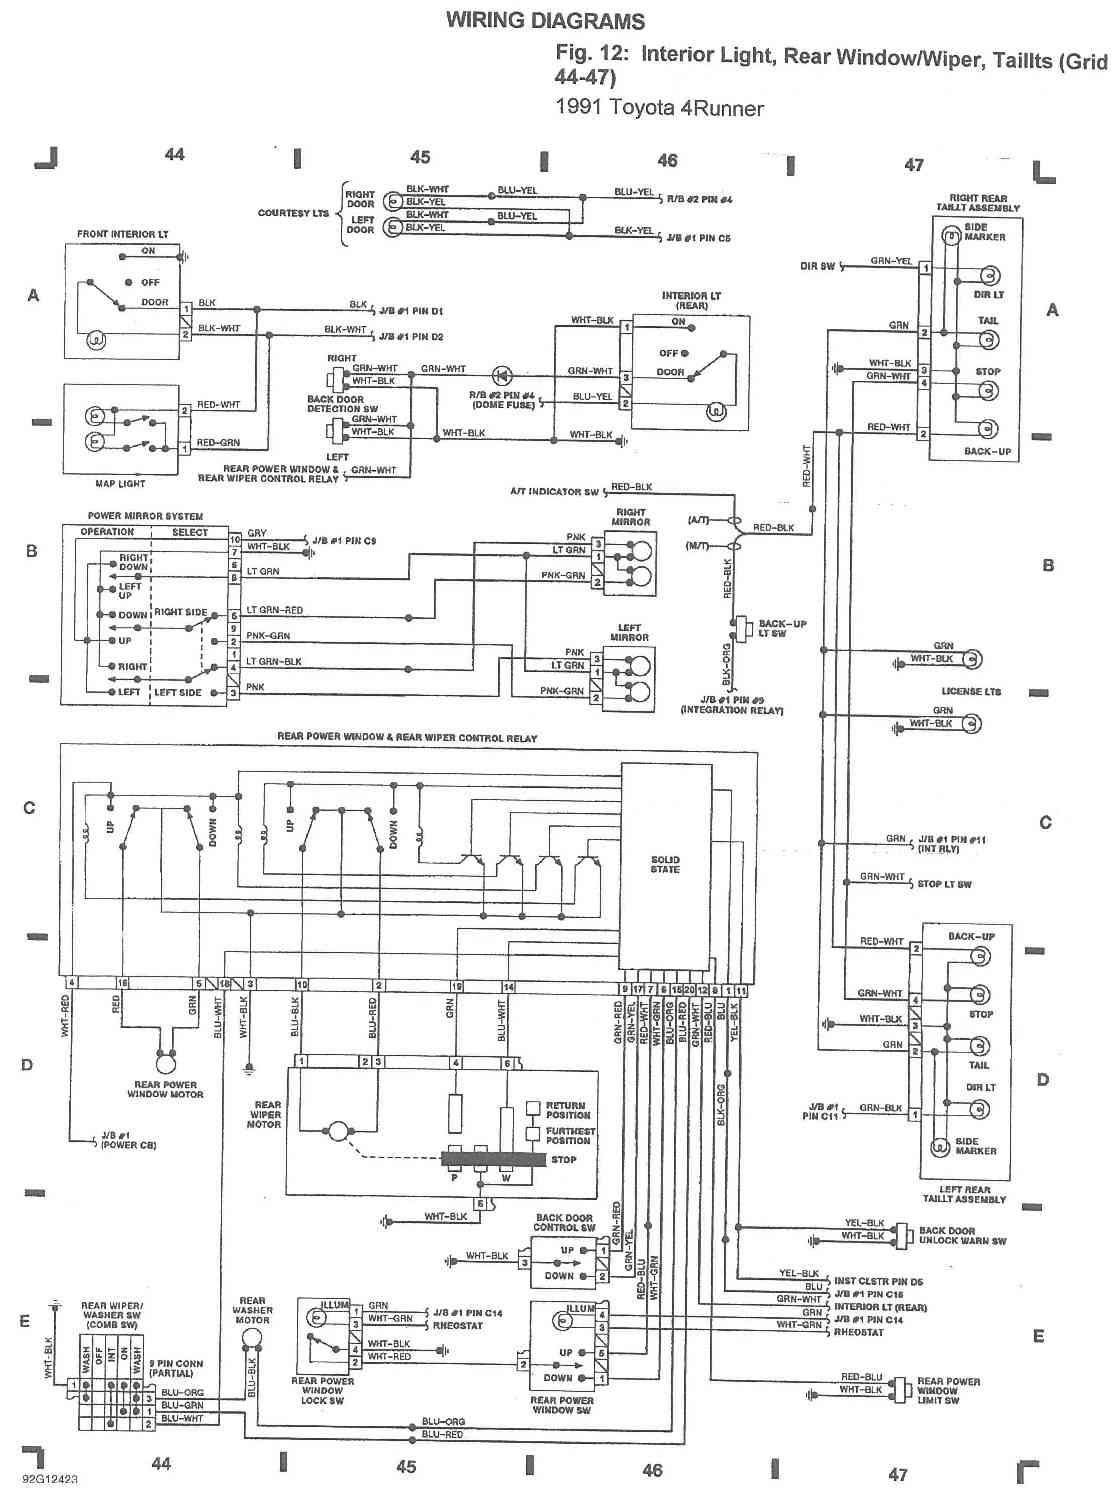 1985 toyota 4runner engine wiring harness #1